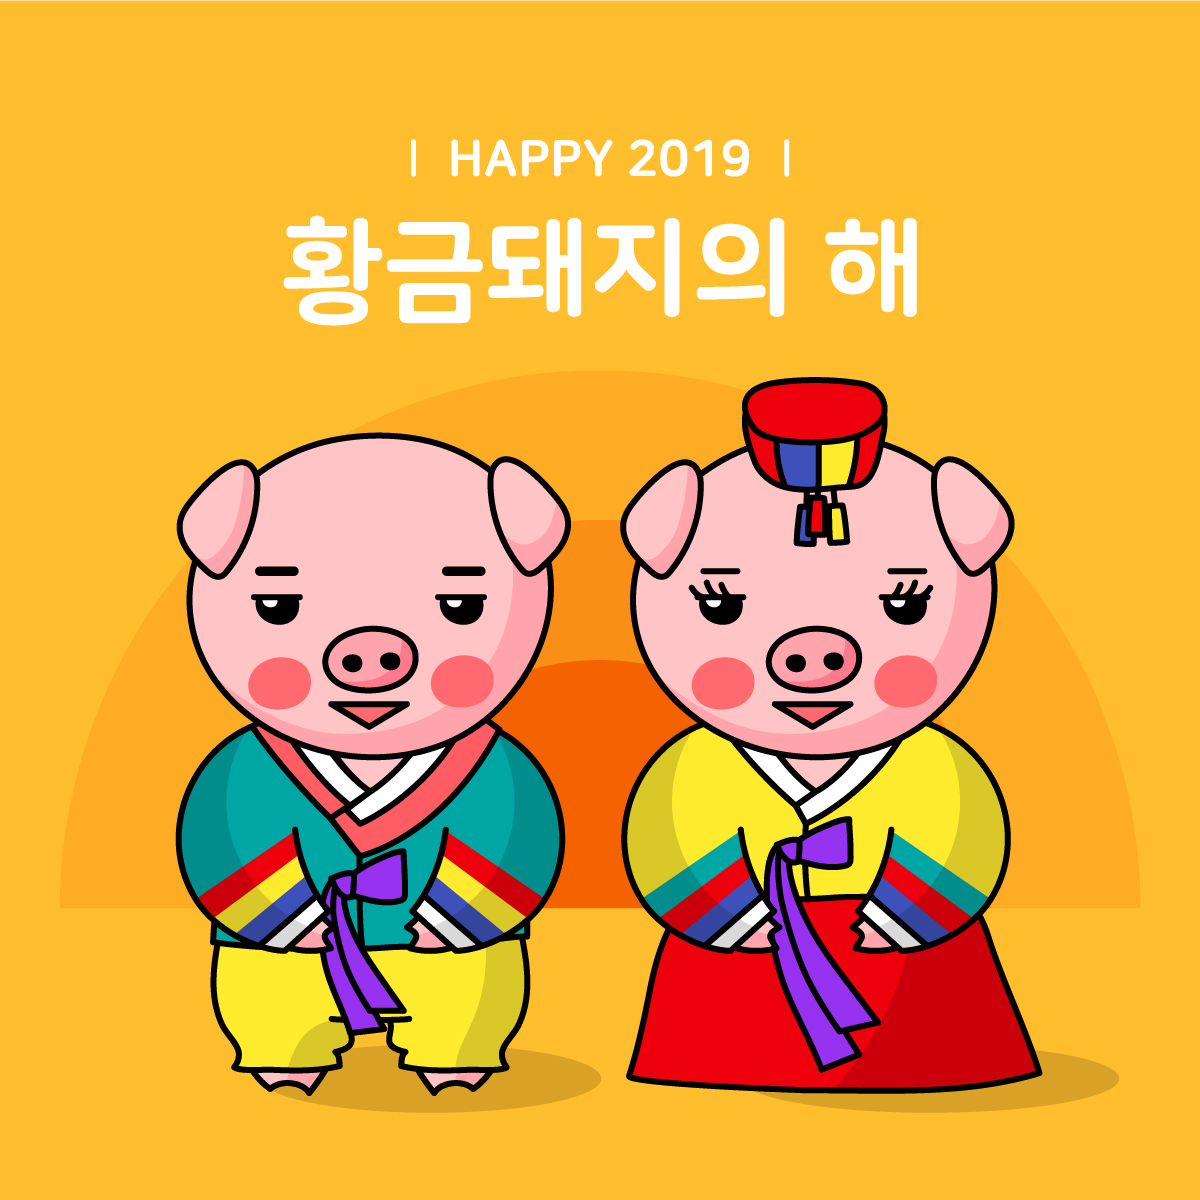 可爱卡通小猪韩式婚礼插画矢量图